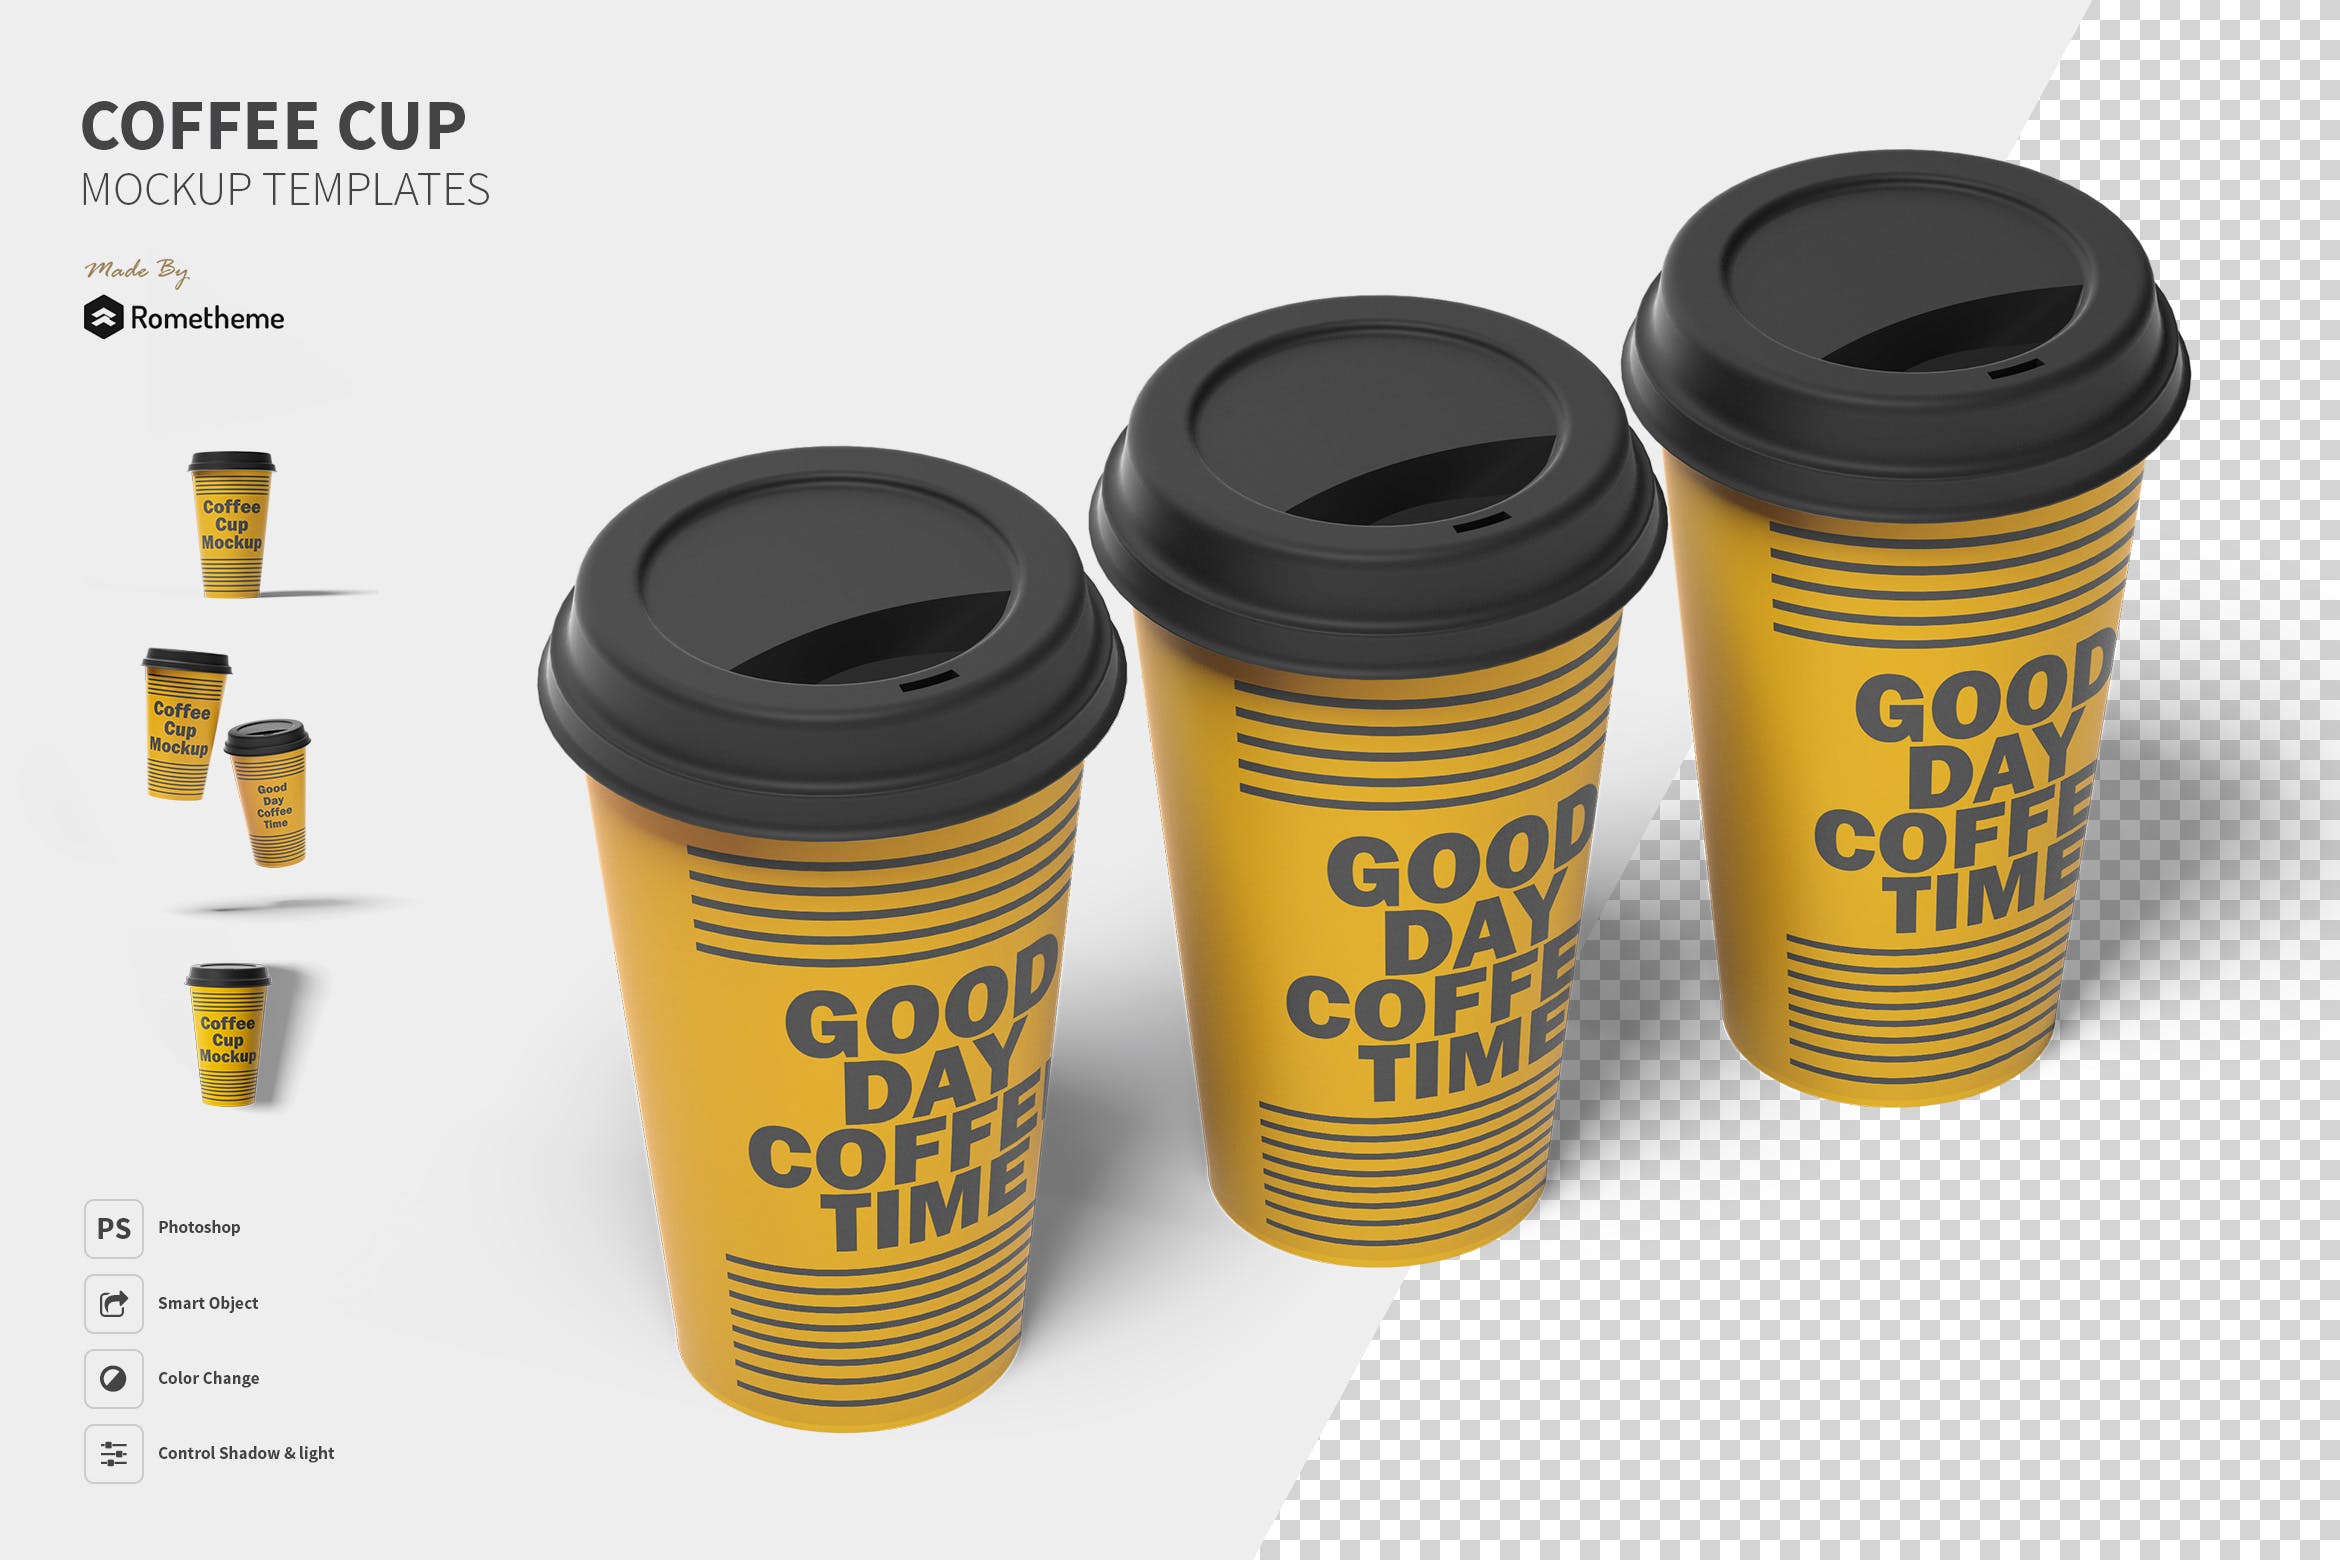 一次性咖啡纸杯设计图16图库精选 Coffee Cup Mockup Set FH插图